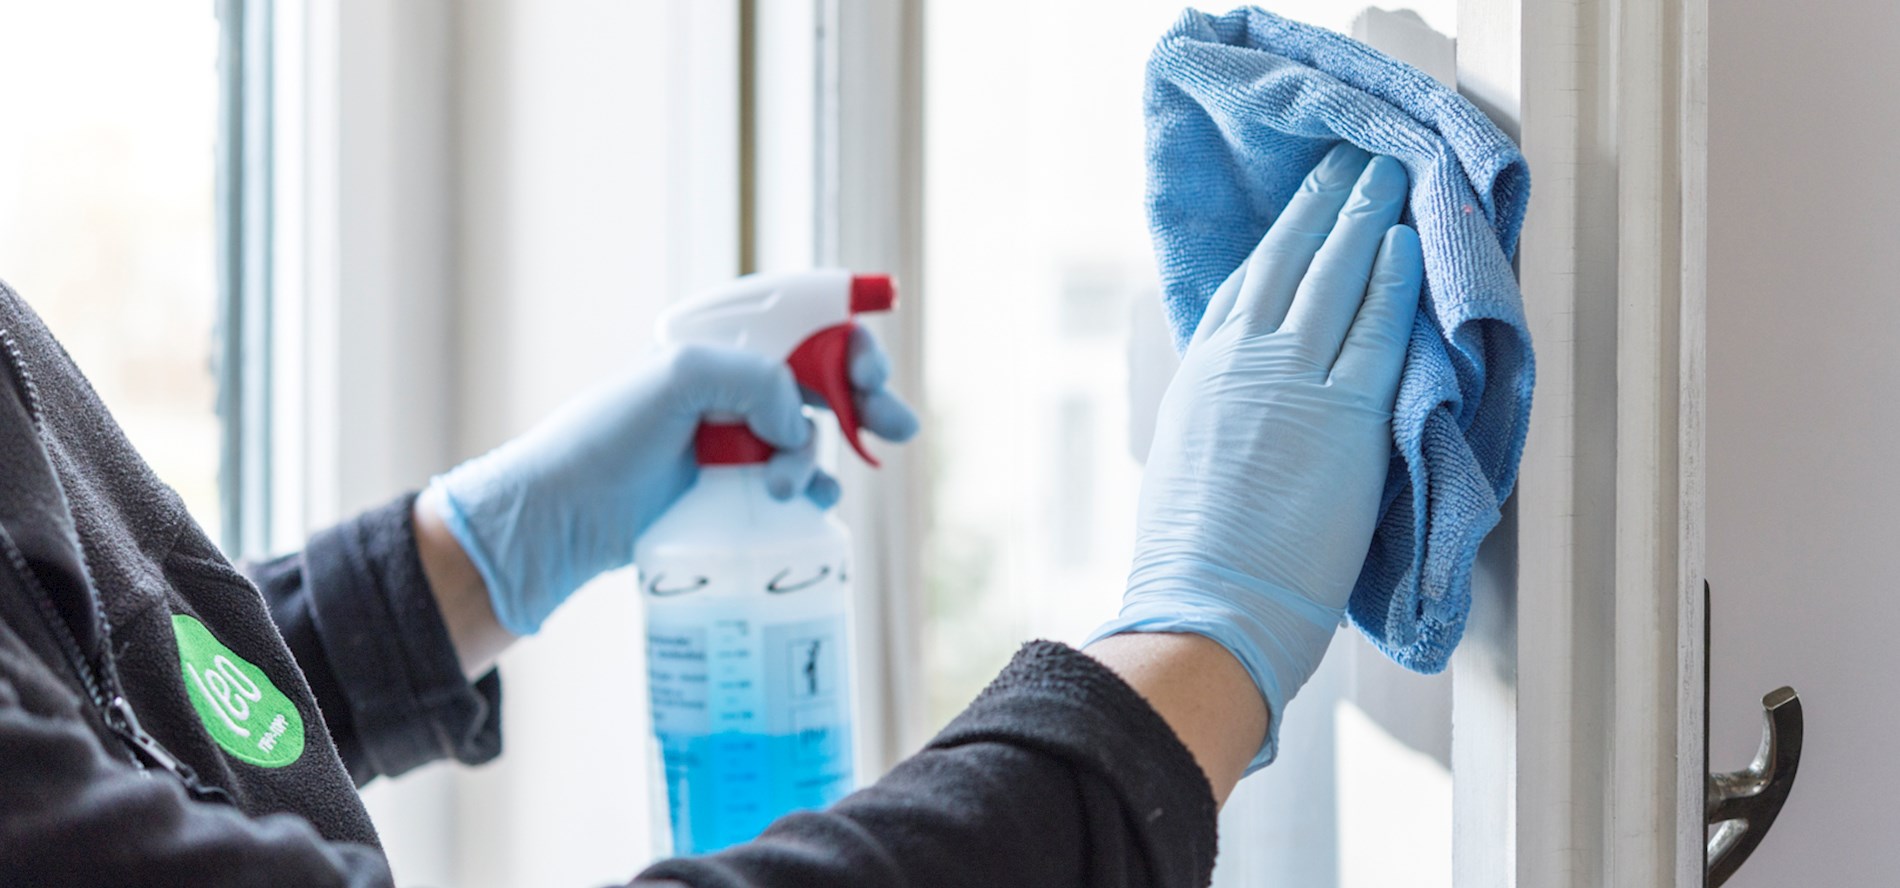 Eine Person putzt ein Fenster. Sie trägt hellblaue Handschuhe. Sie verwendet Putzmittel in einer Sprühflasche und einen hellblauen Lappen.